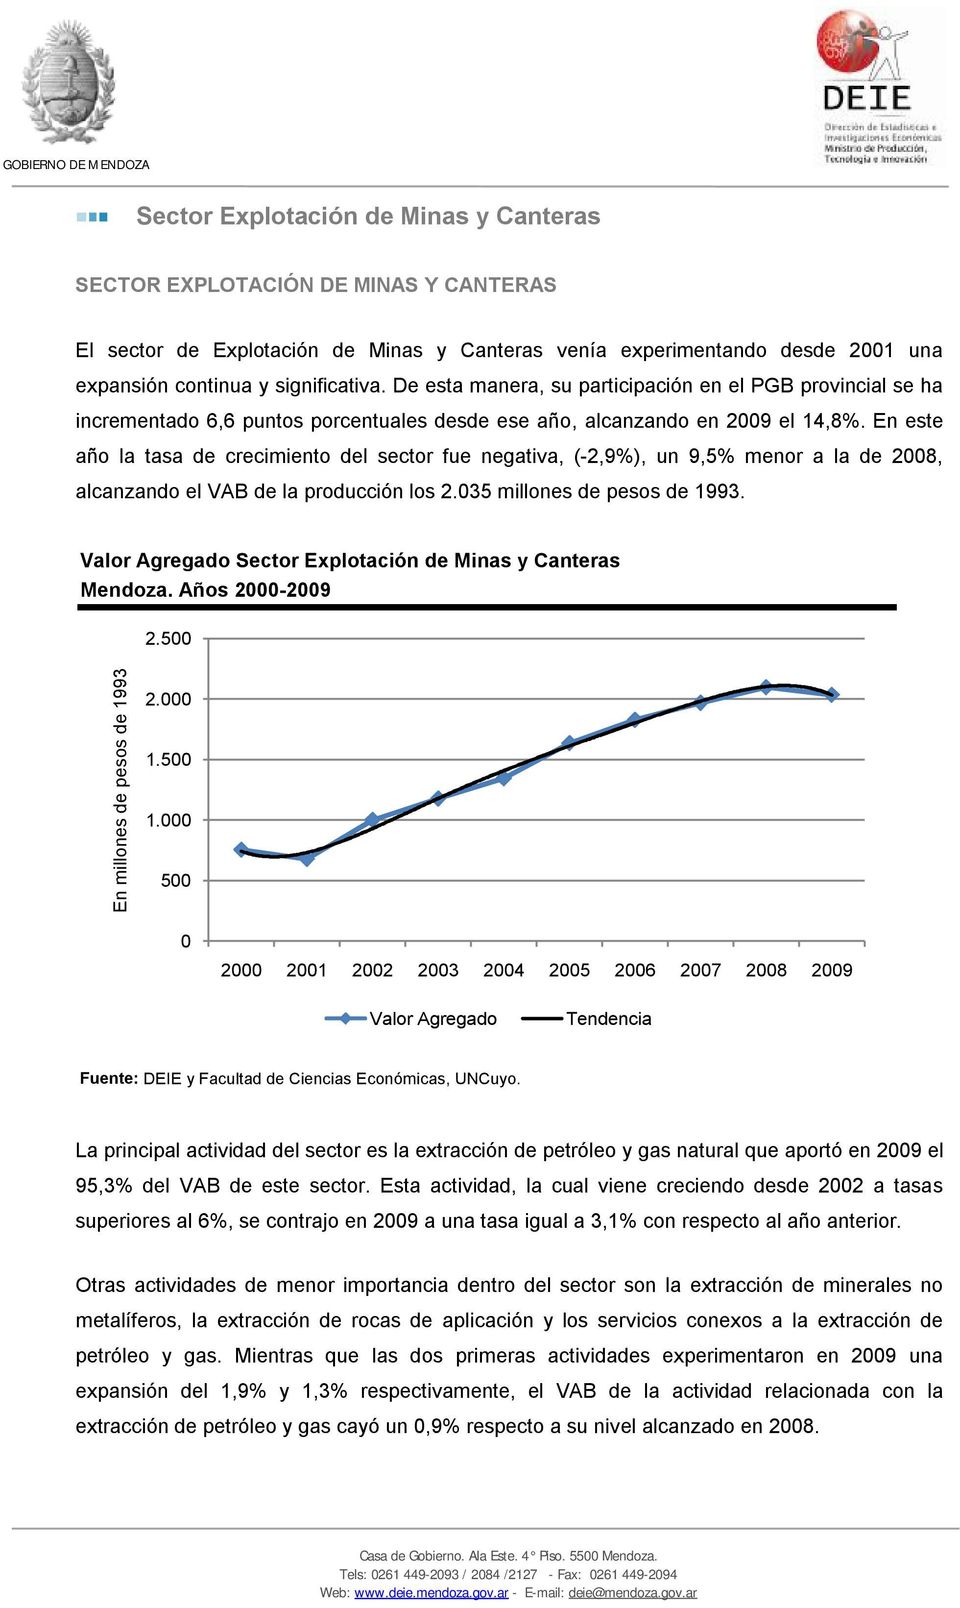 En este año la tasa de crecimiento del sector fue negativa, (-2,9%), un 9,5% menor a la de 2008, alcanzando el VAB de la producción los 2.035 millones de pesos de 1993.